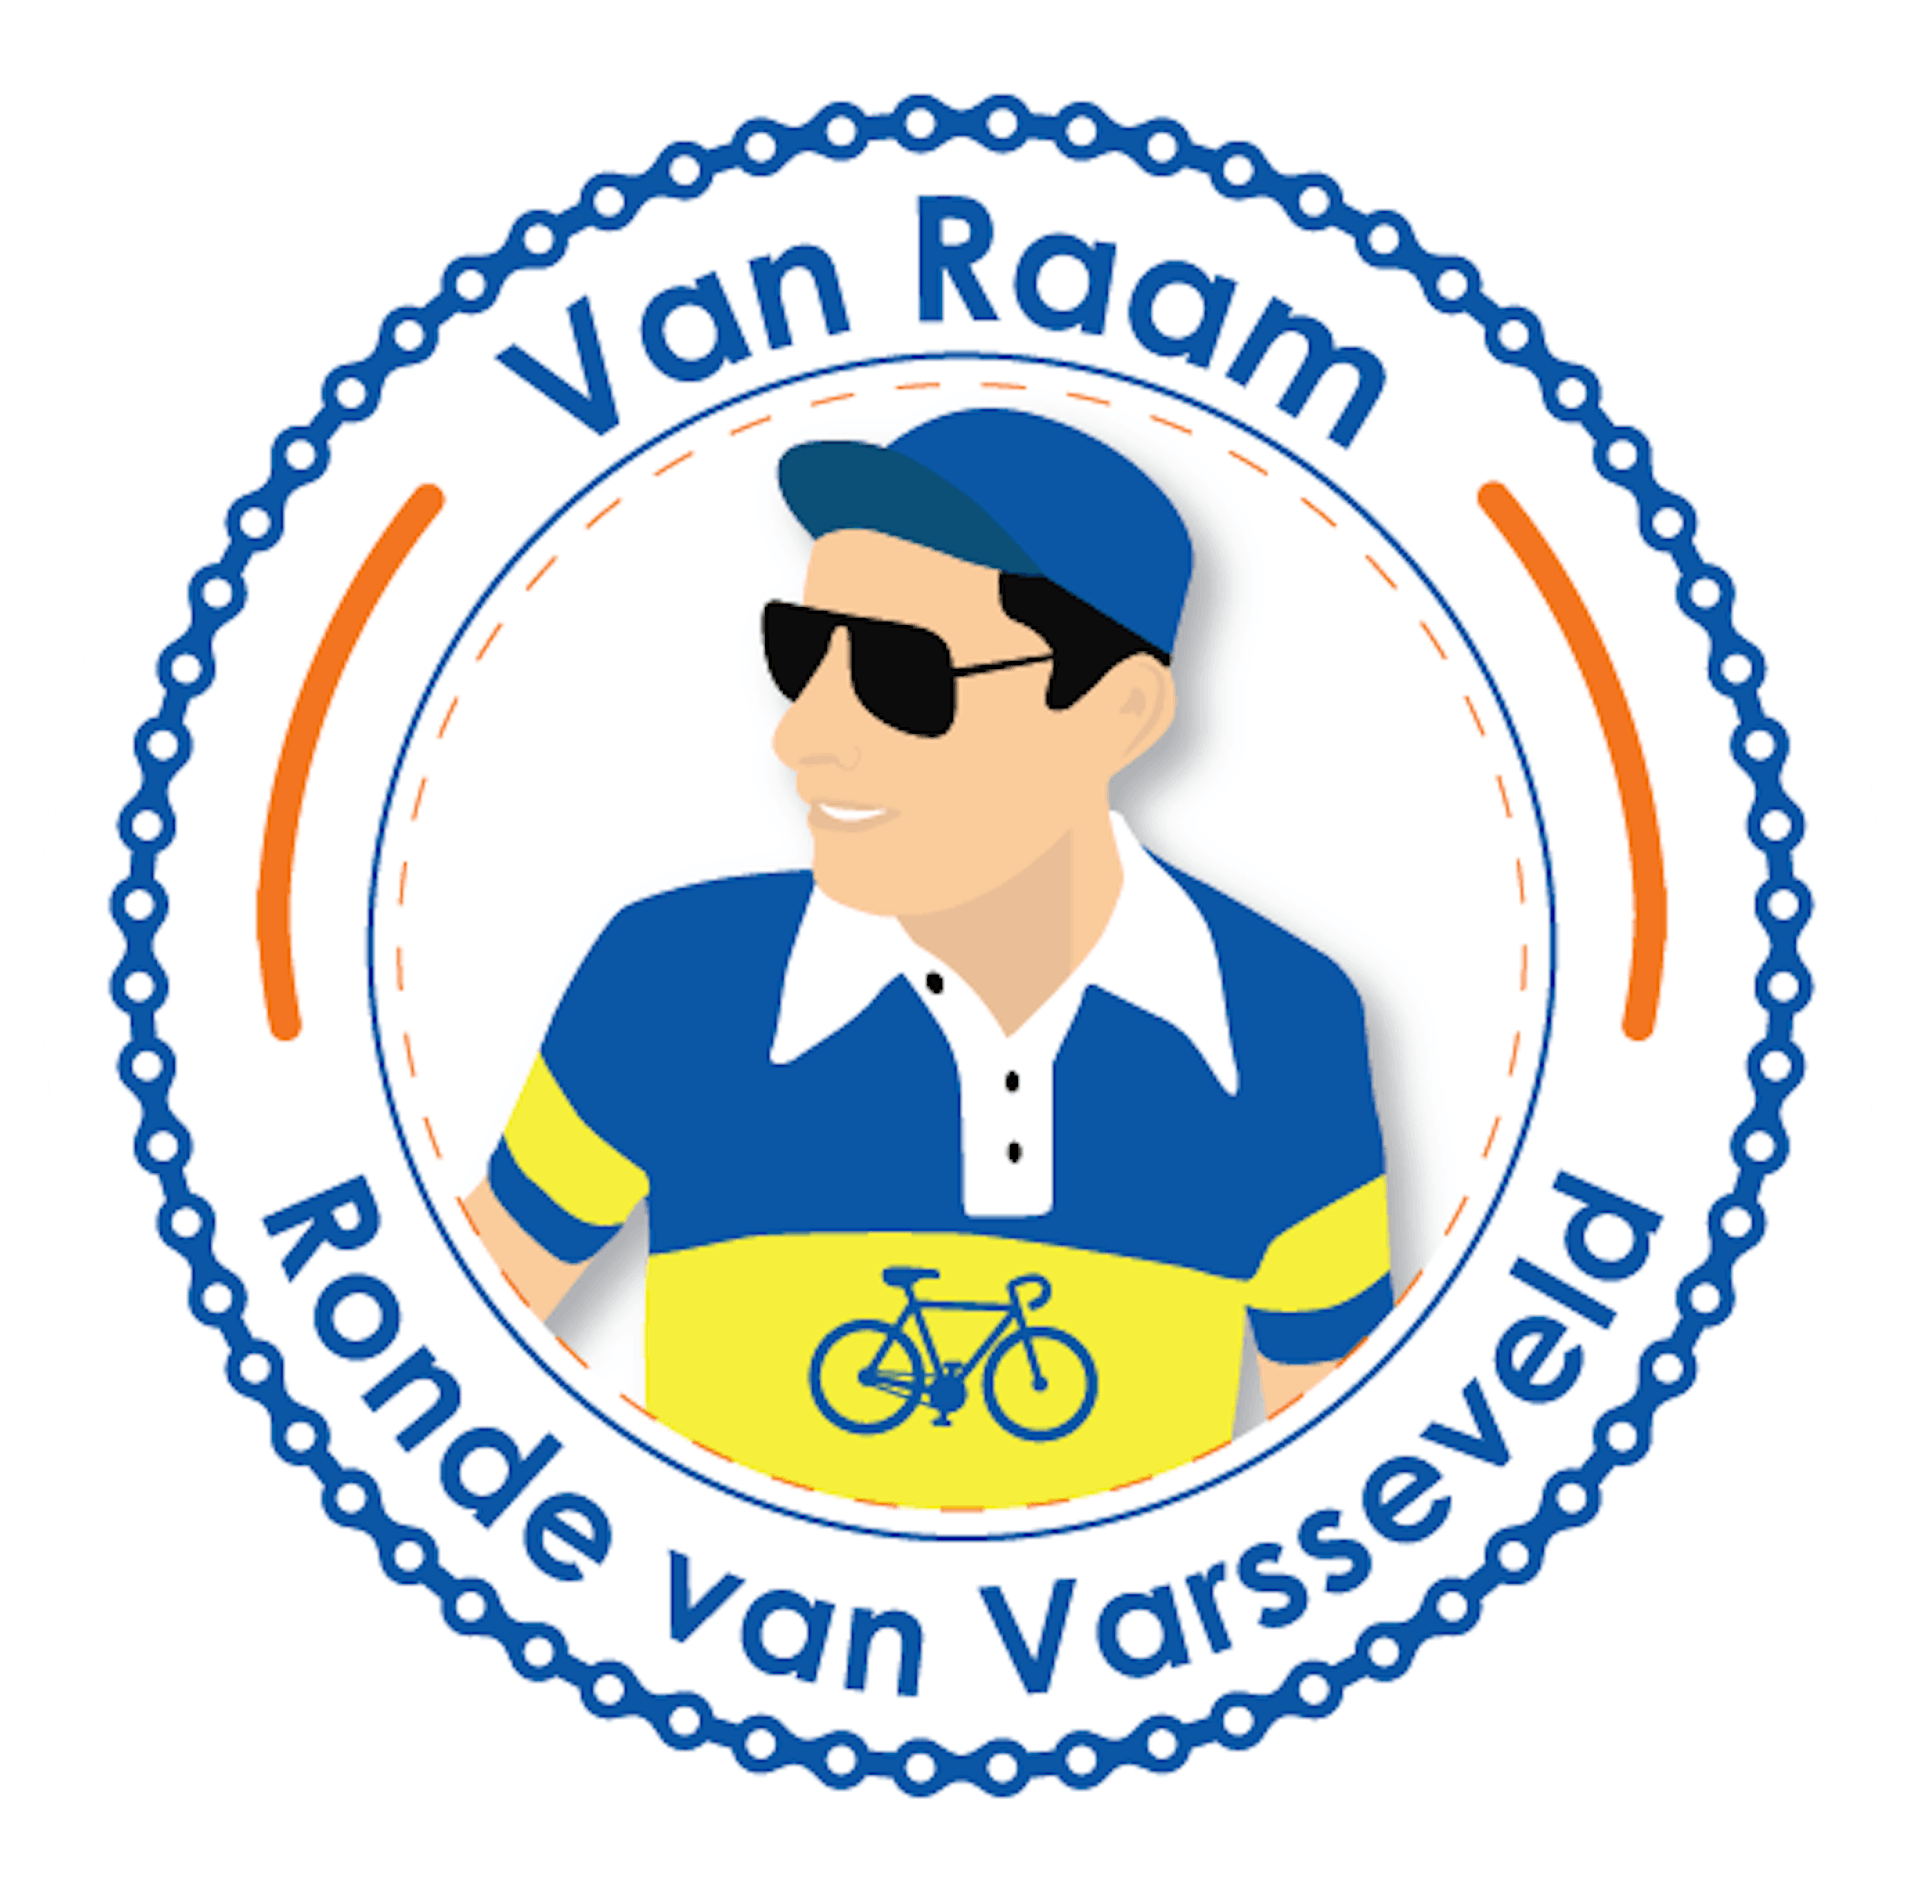 Van Raam Ronde van Varsseveld logo